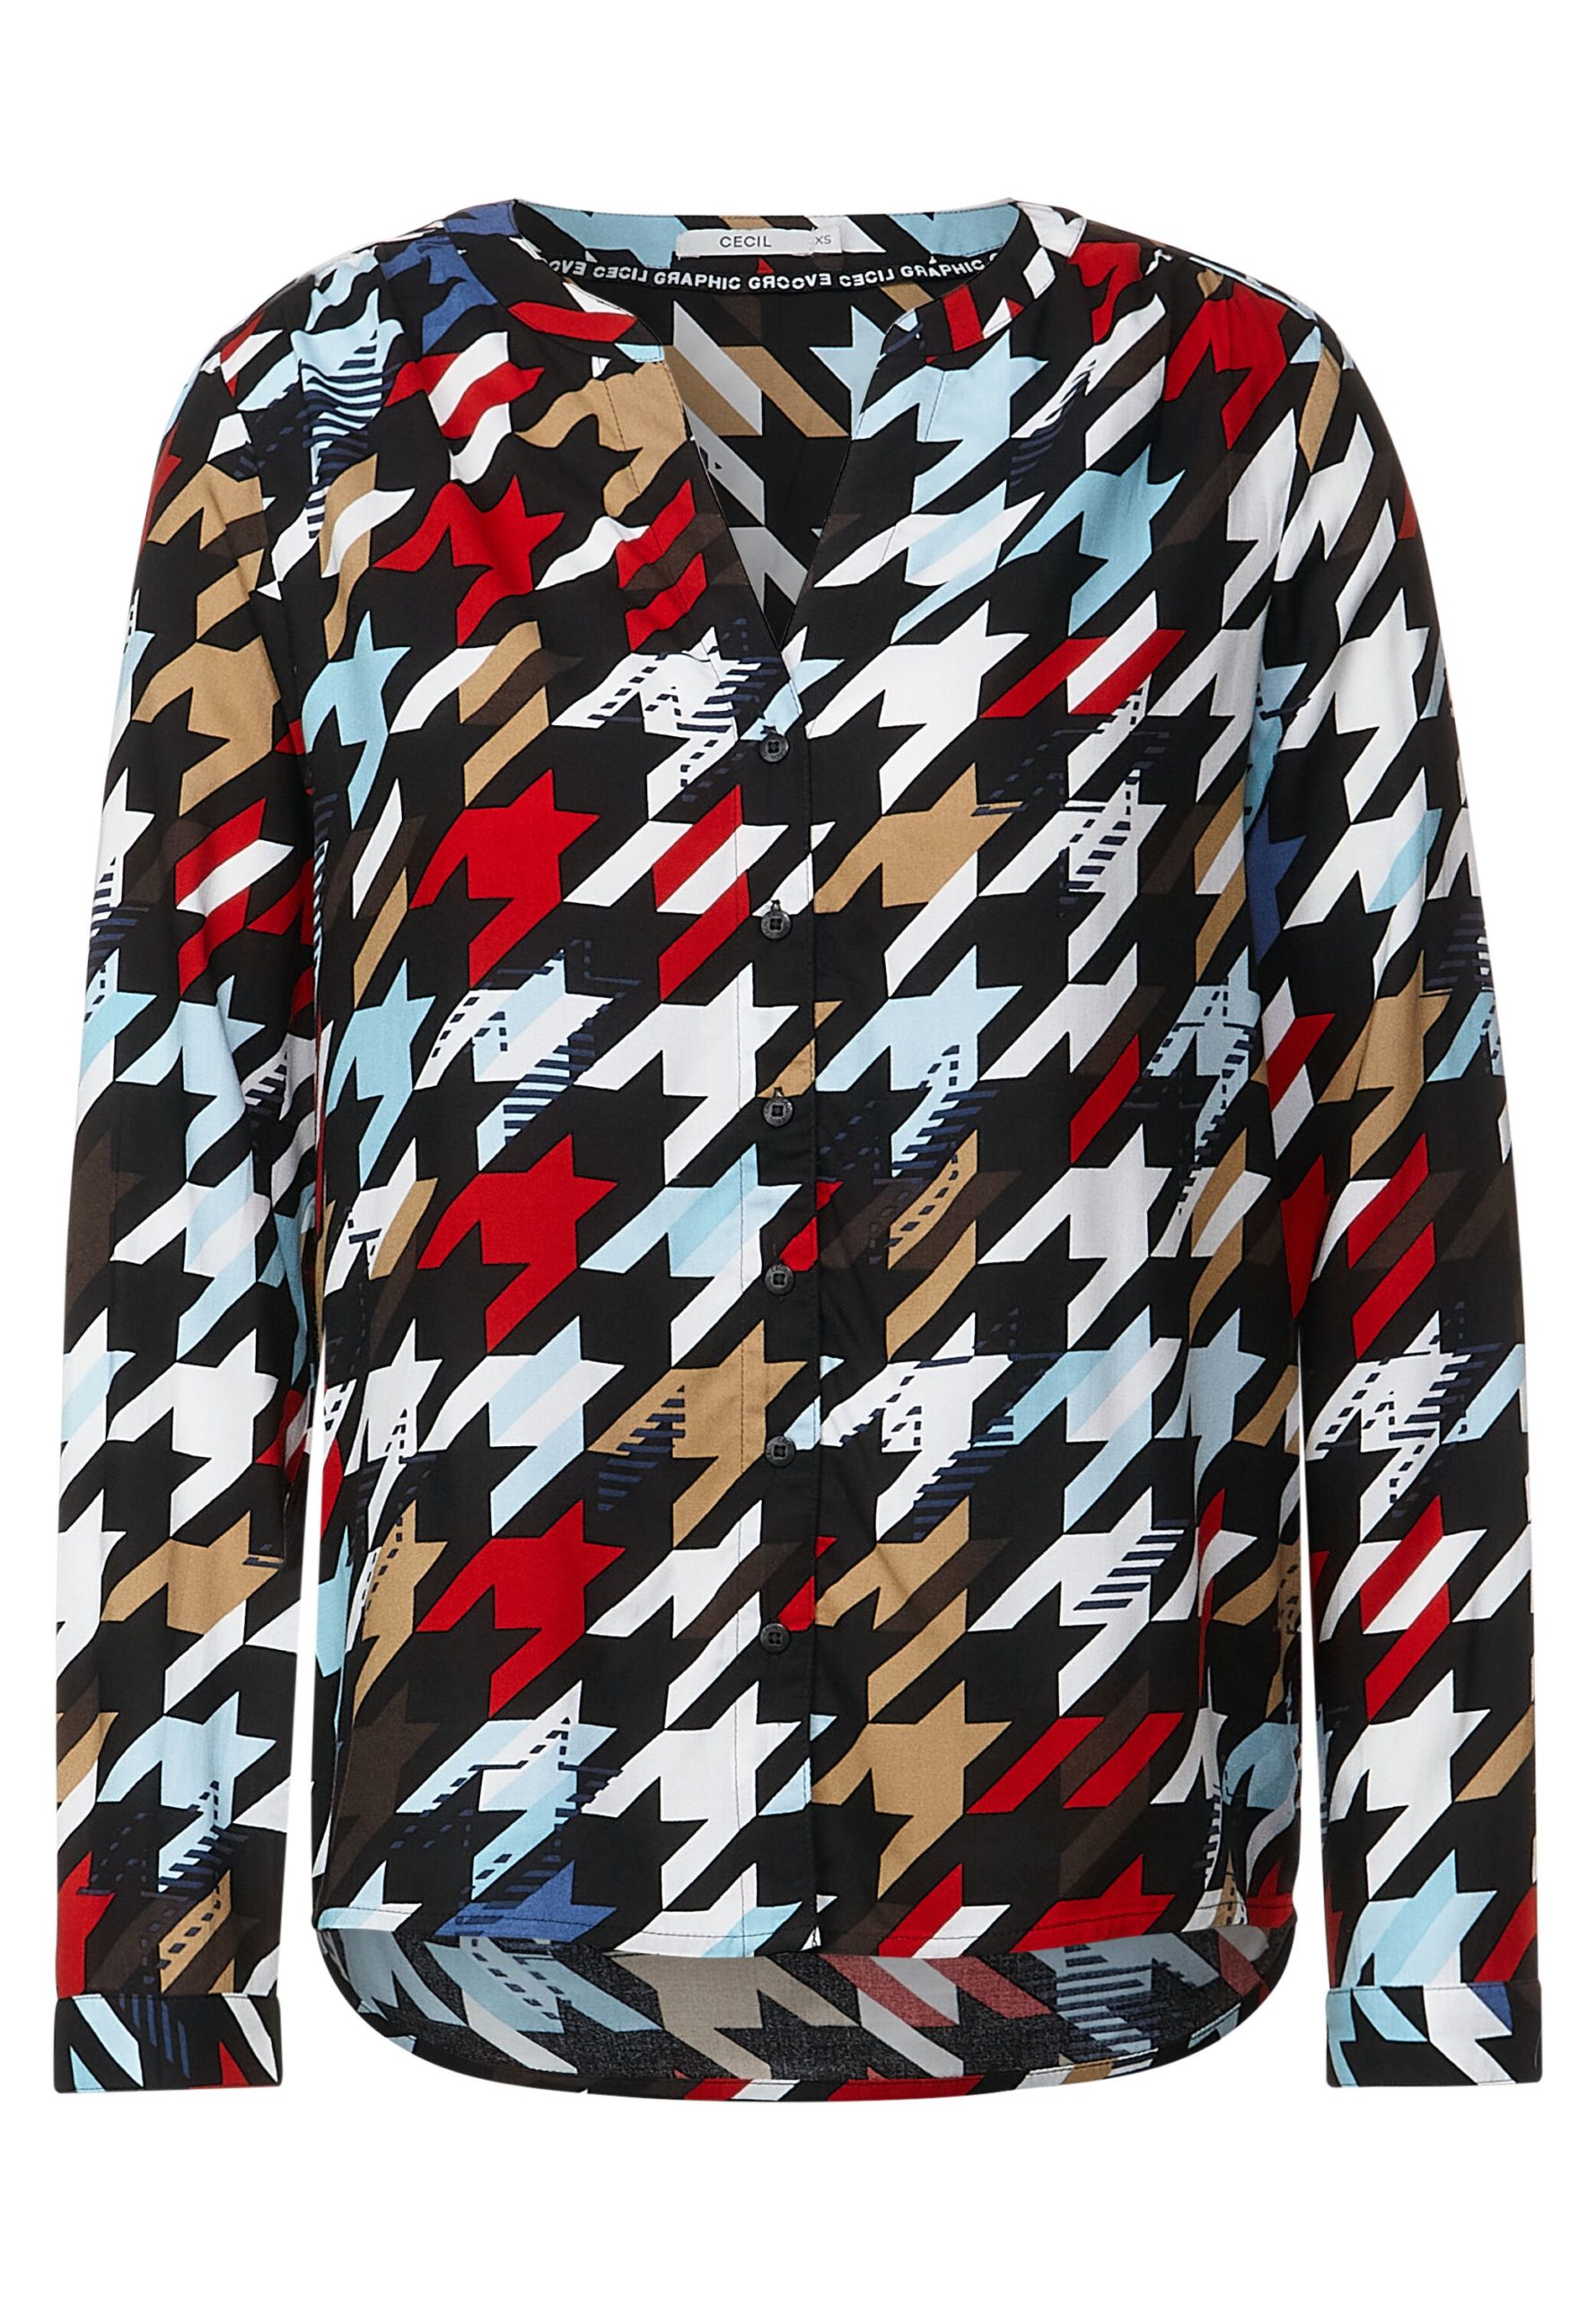 Bluse mit Multicolorprint von Cecil Onlineshop Mode Flach 